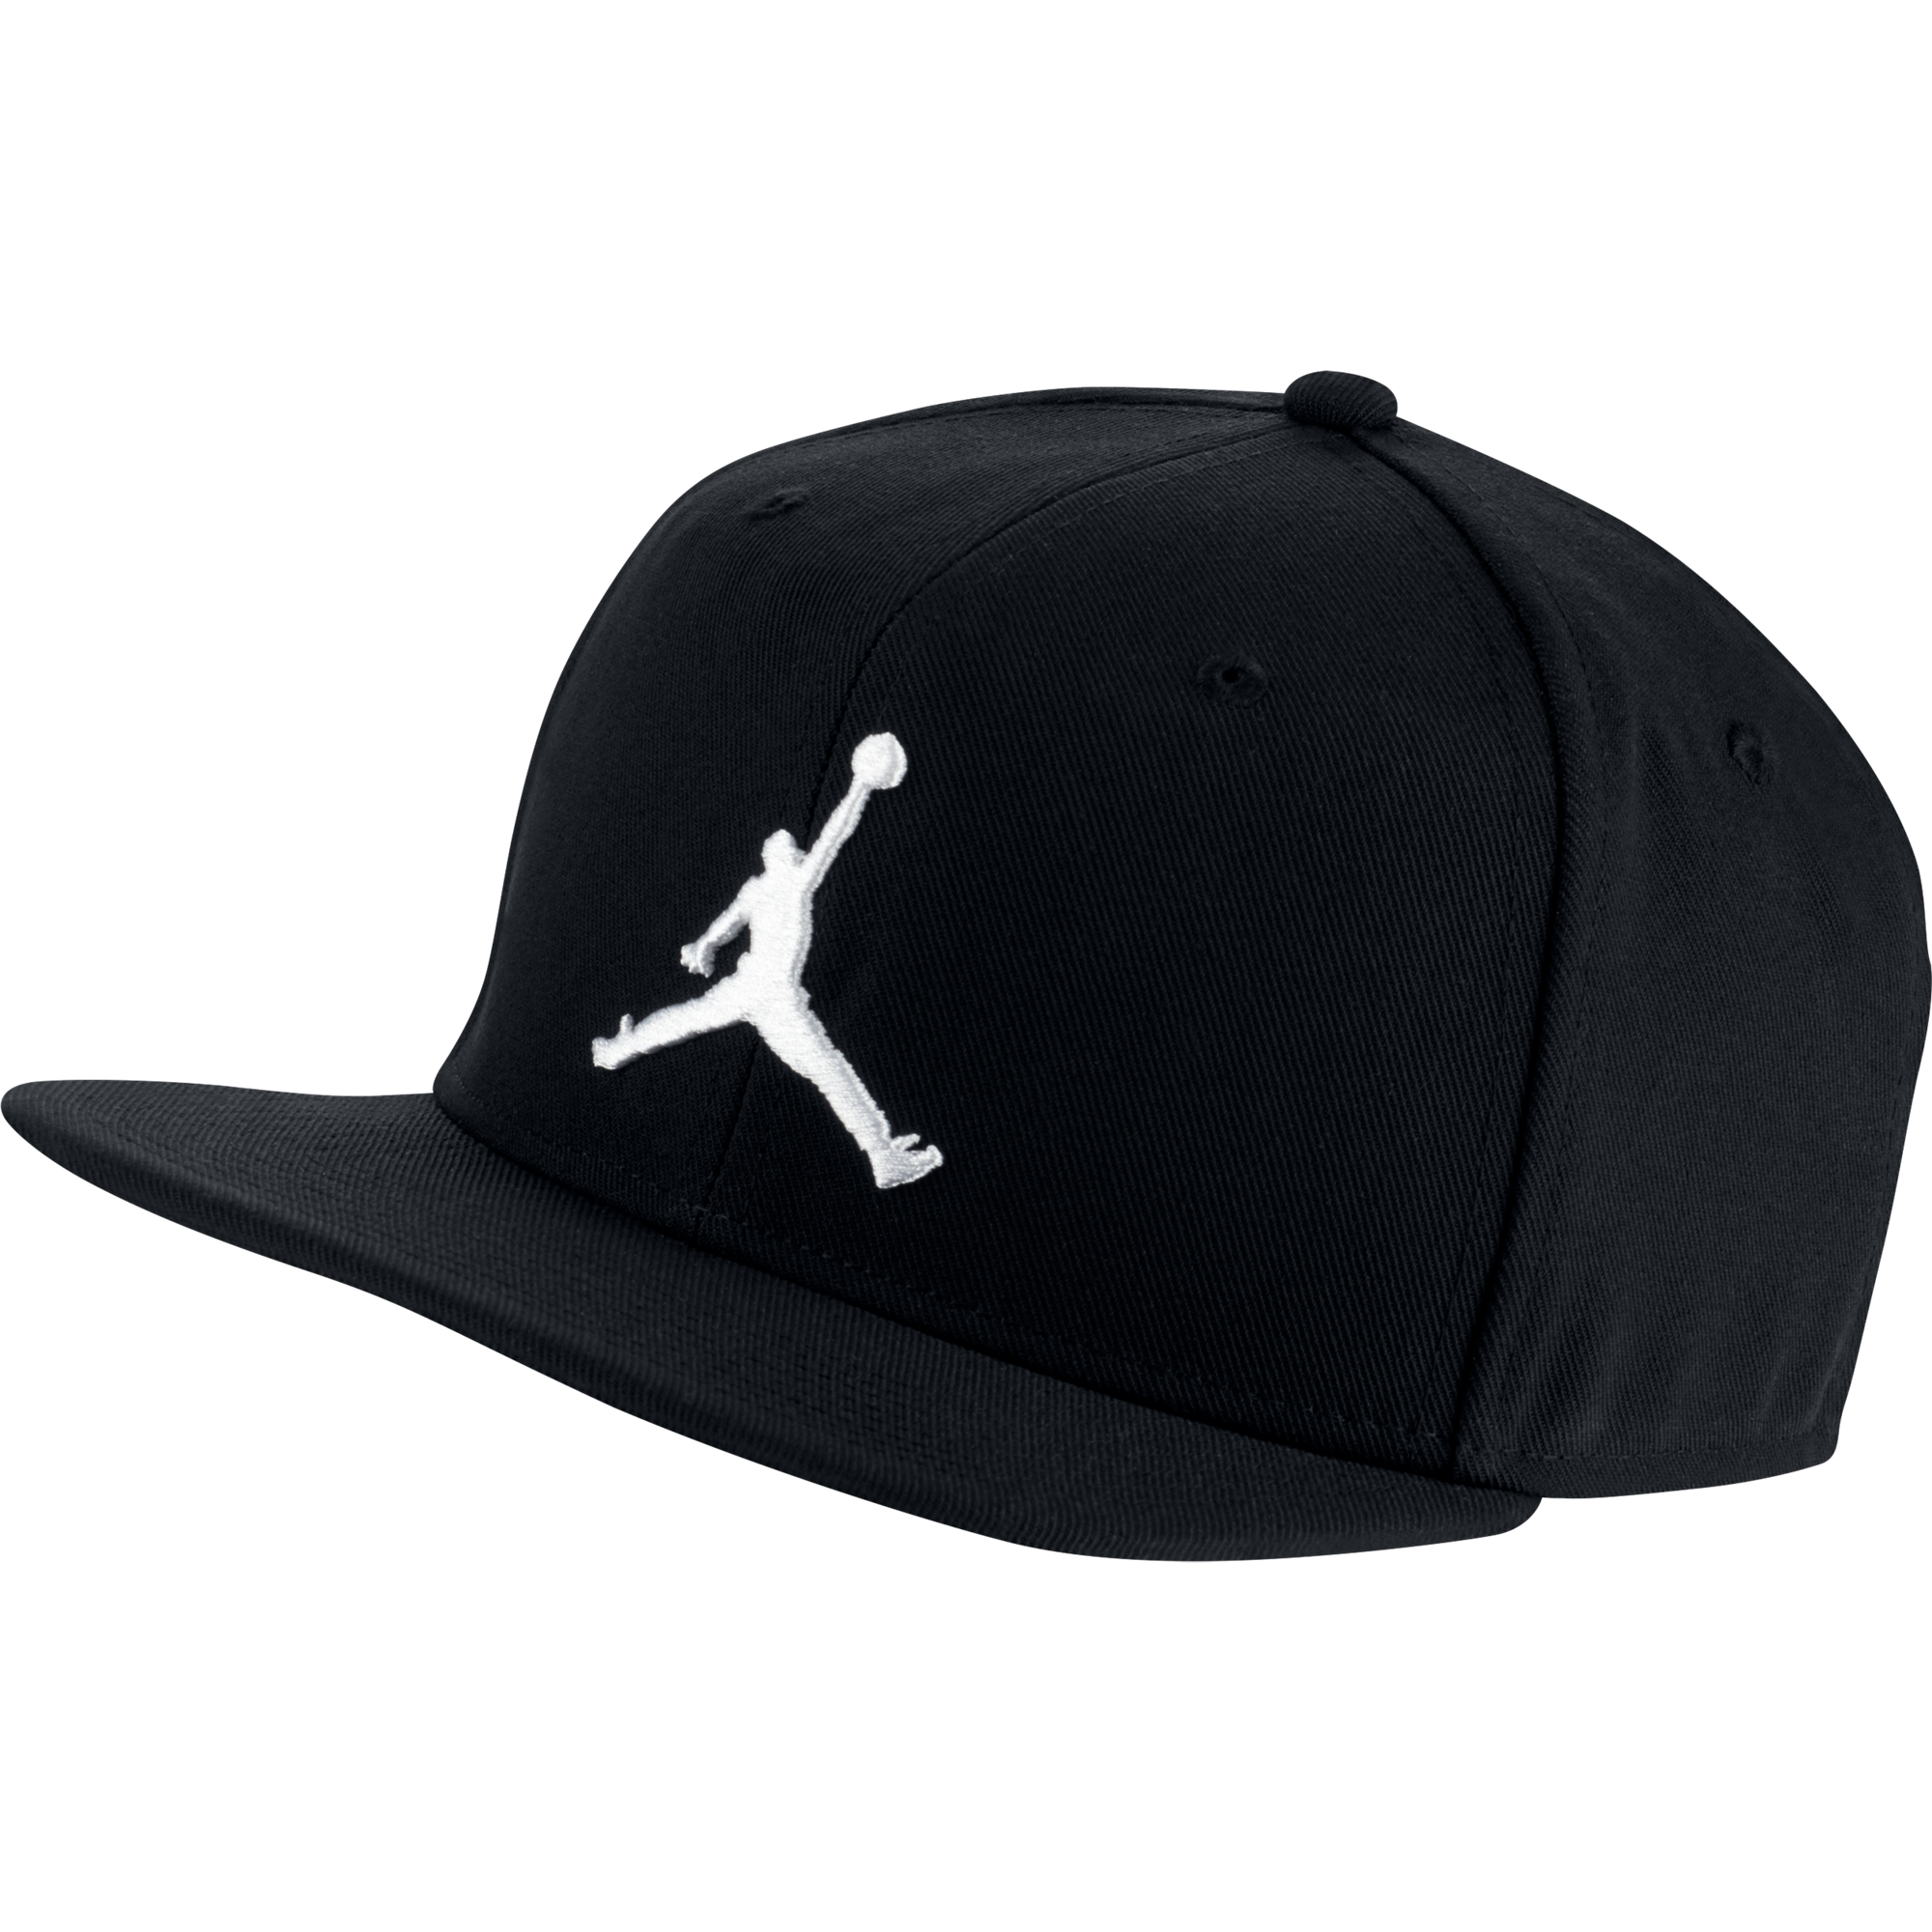 jumpman hat black